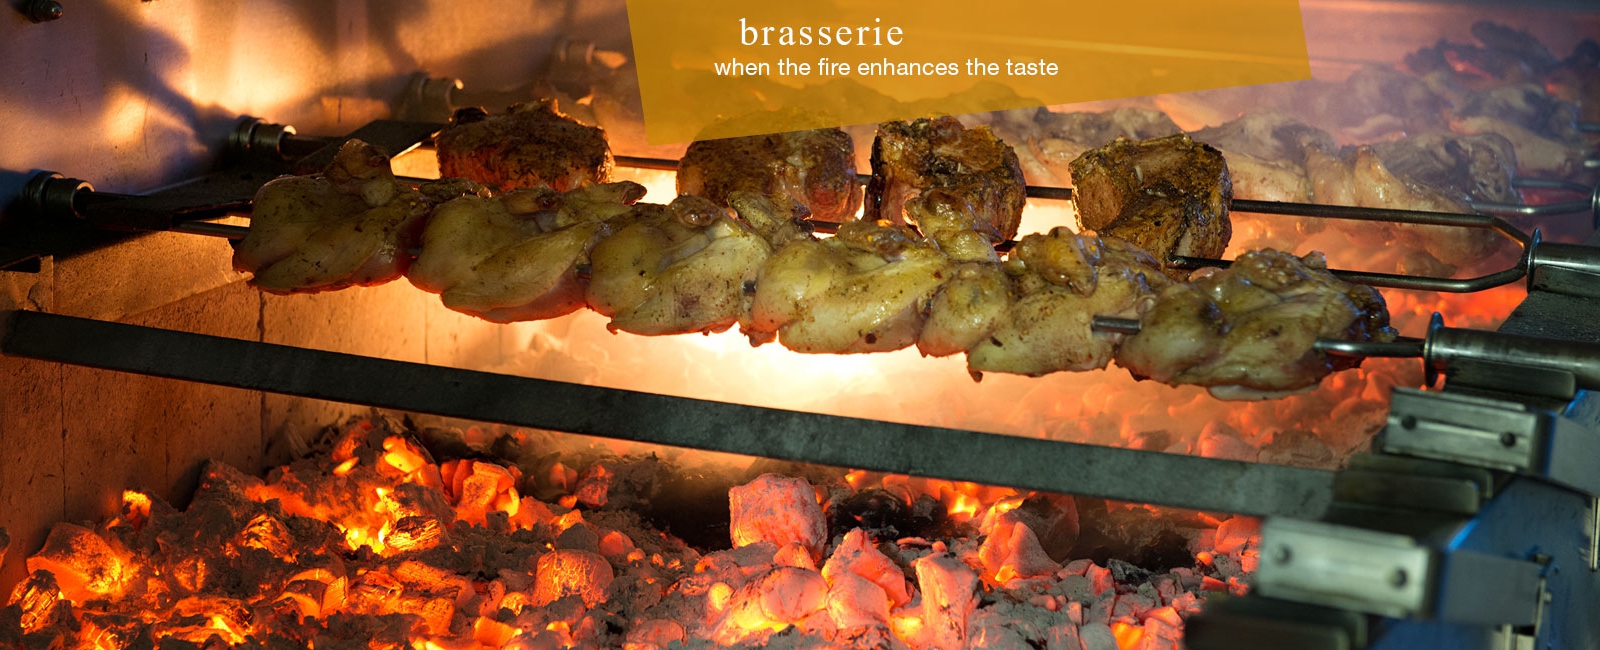 <div>Brasserie<br /> when the fire enhances the taste</div>
